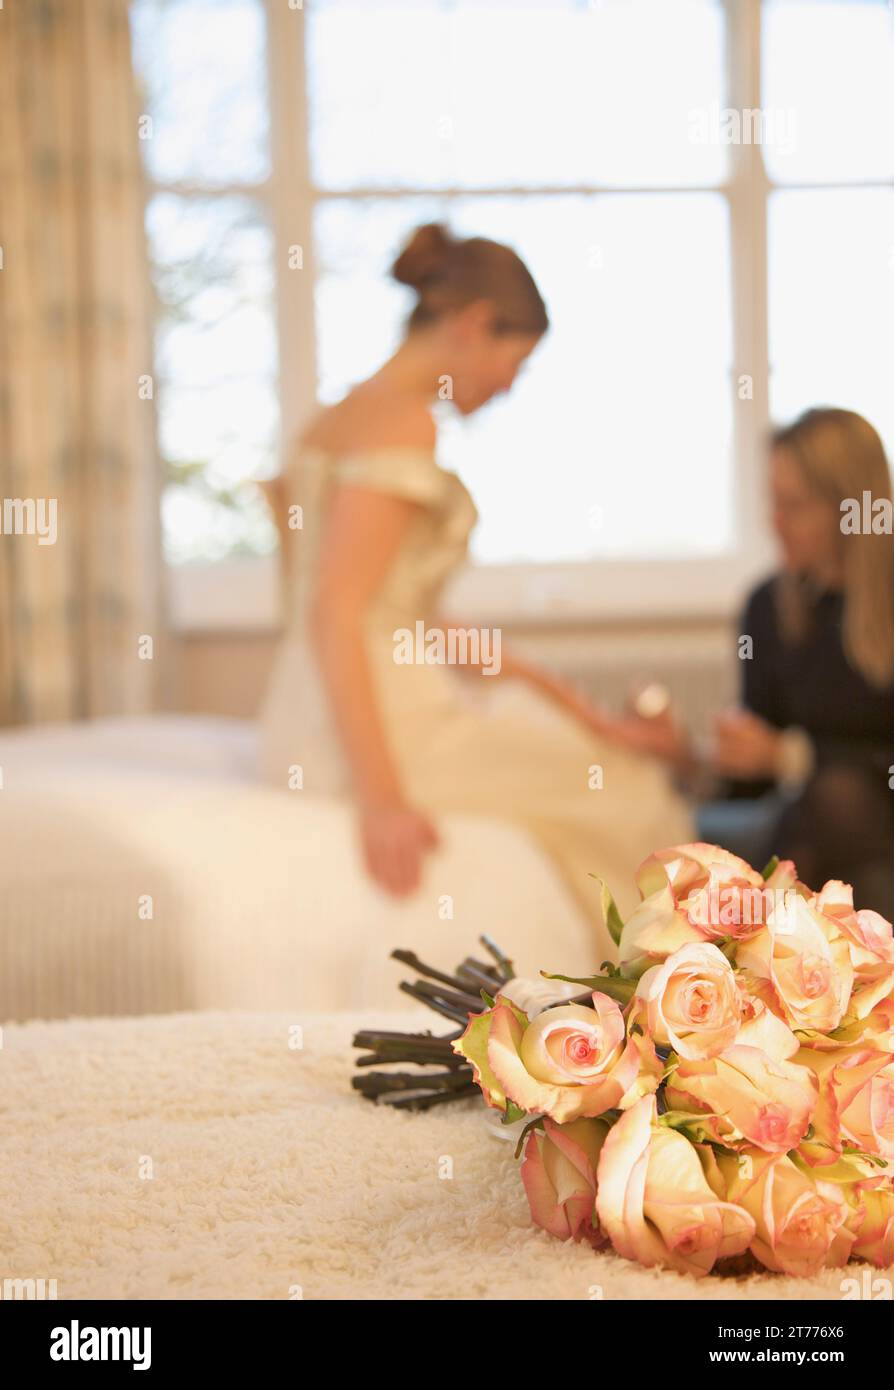 Nahaufnahme von einem Strauß Rosen auf einem Bett liegend mit Braut empfangen eine Maniküre Stockfoto